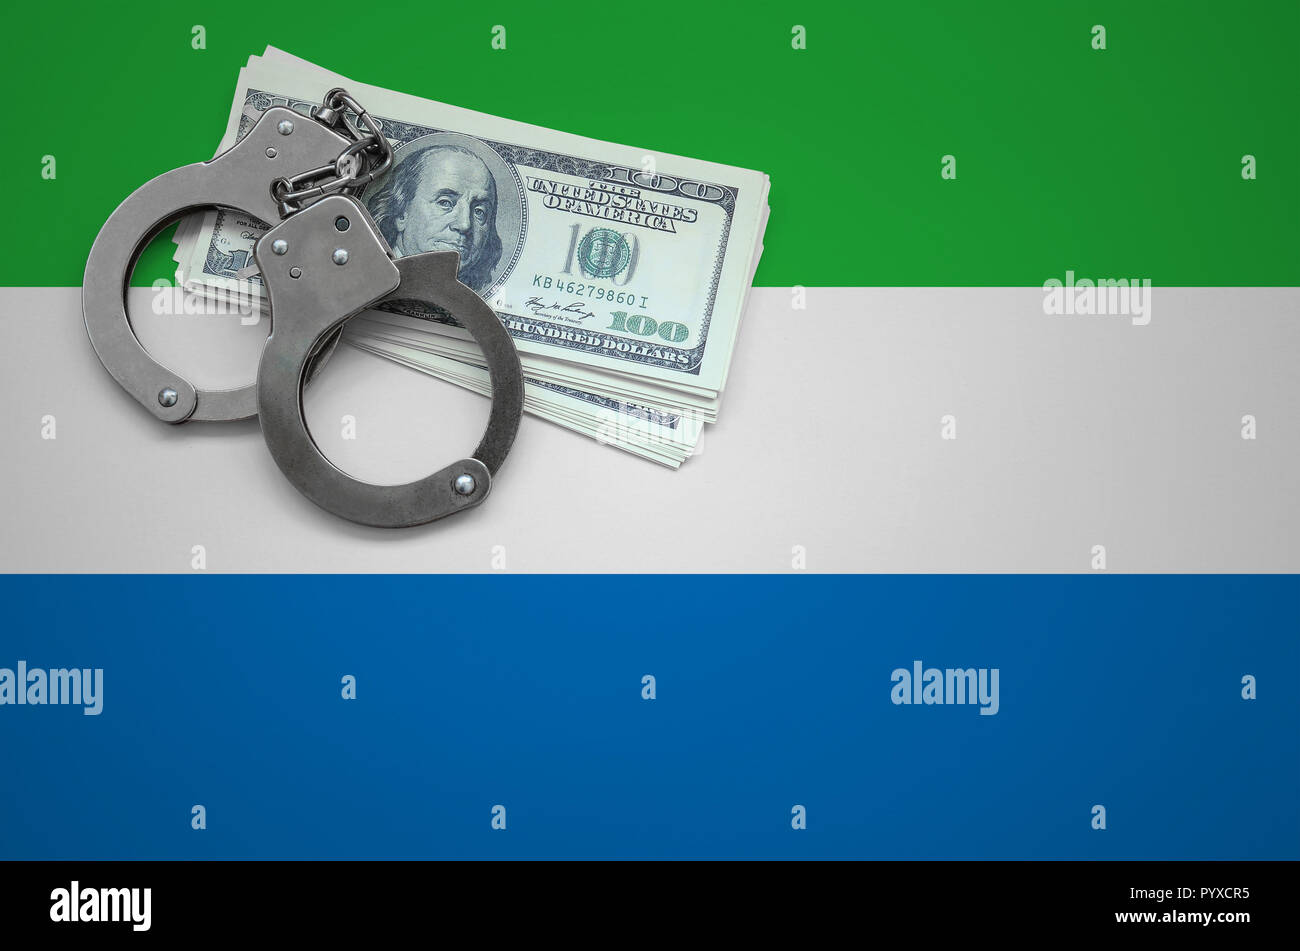 Sierra Leone Fahne mit Handschellen und ein Bündel von Dollar. Das Konzept der das Gesetz zu brechen und Diebe Verbrechen. Stockfoto